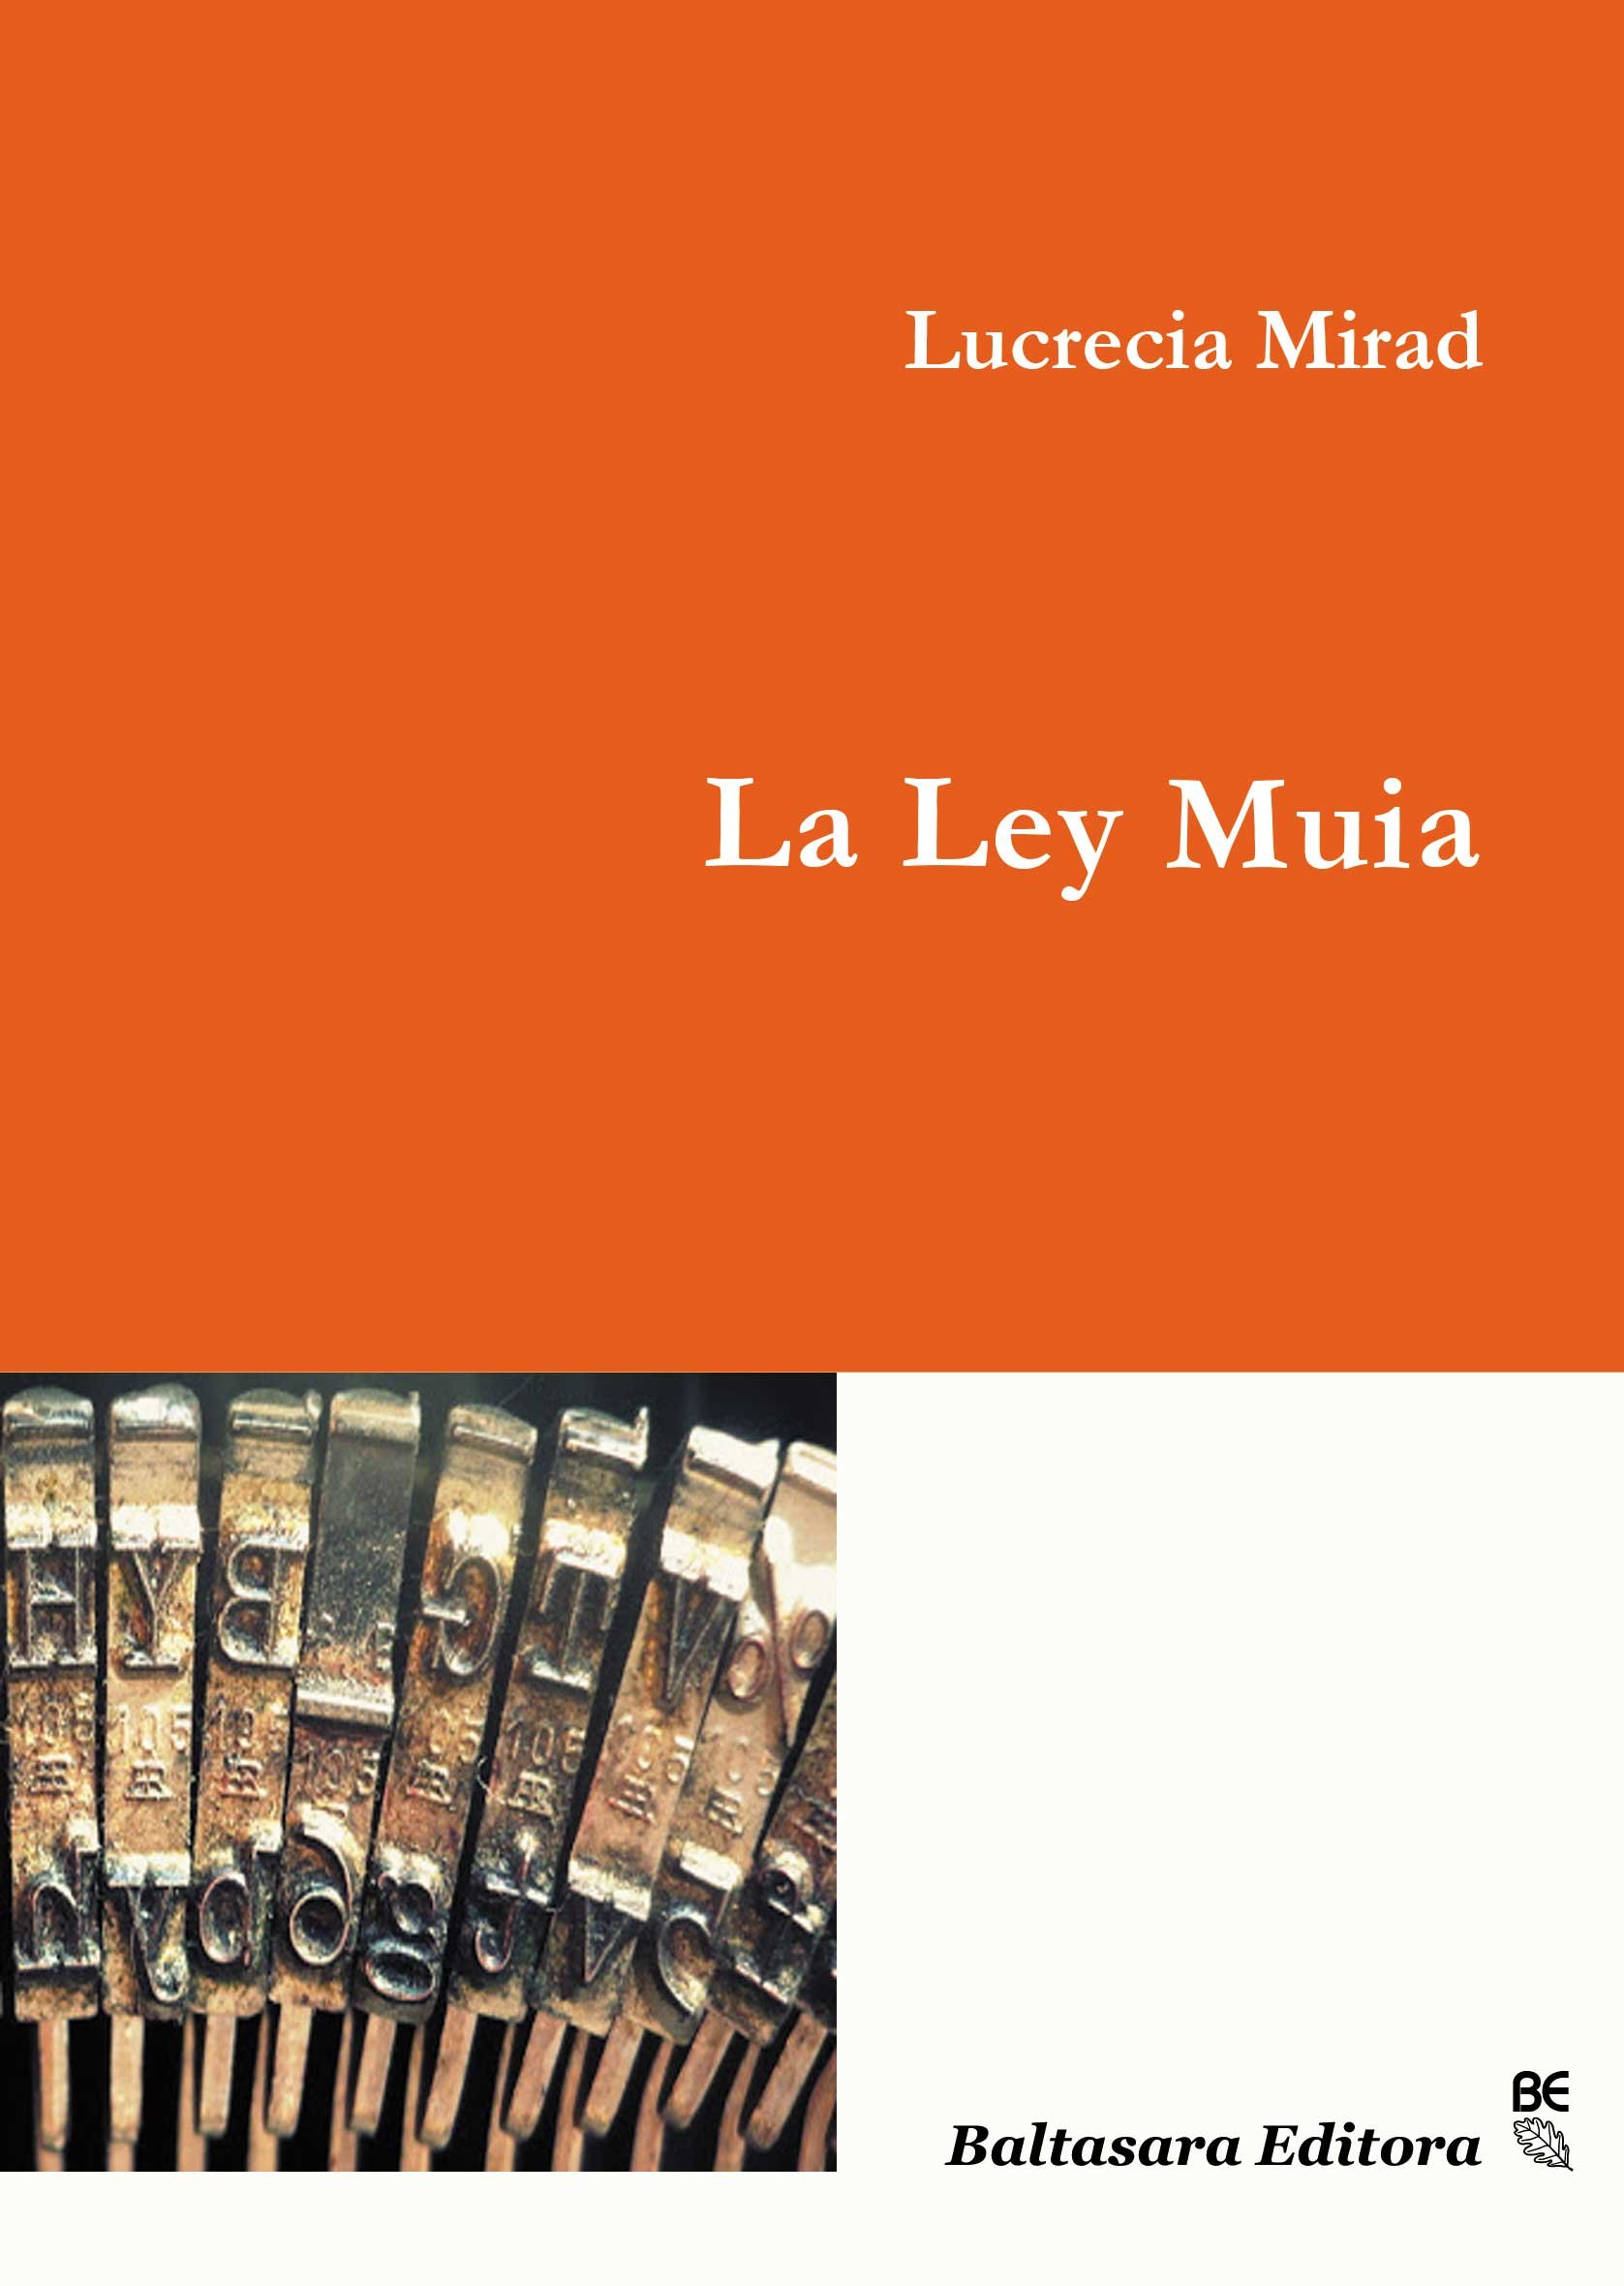 La Ley Muia _____________________________